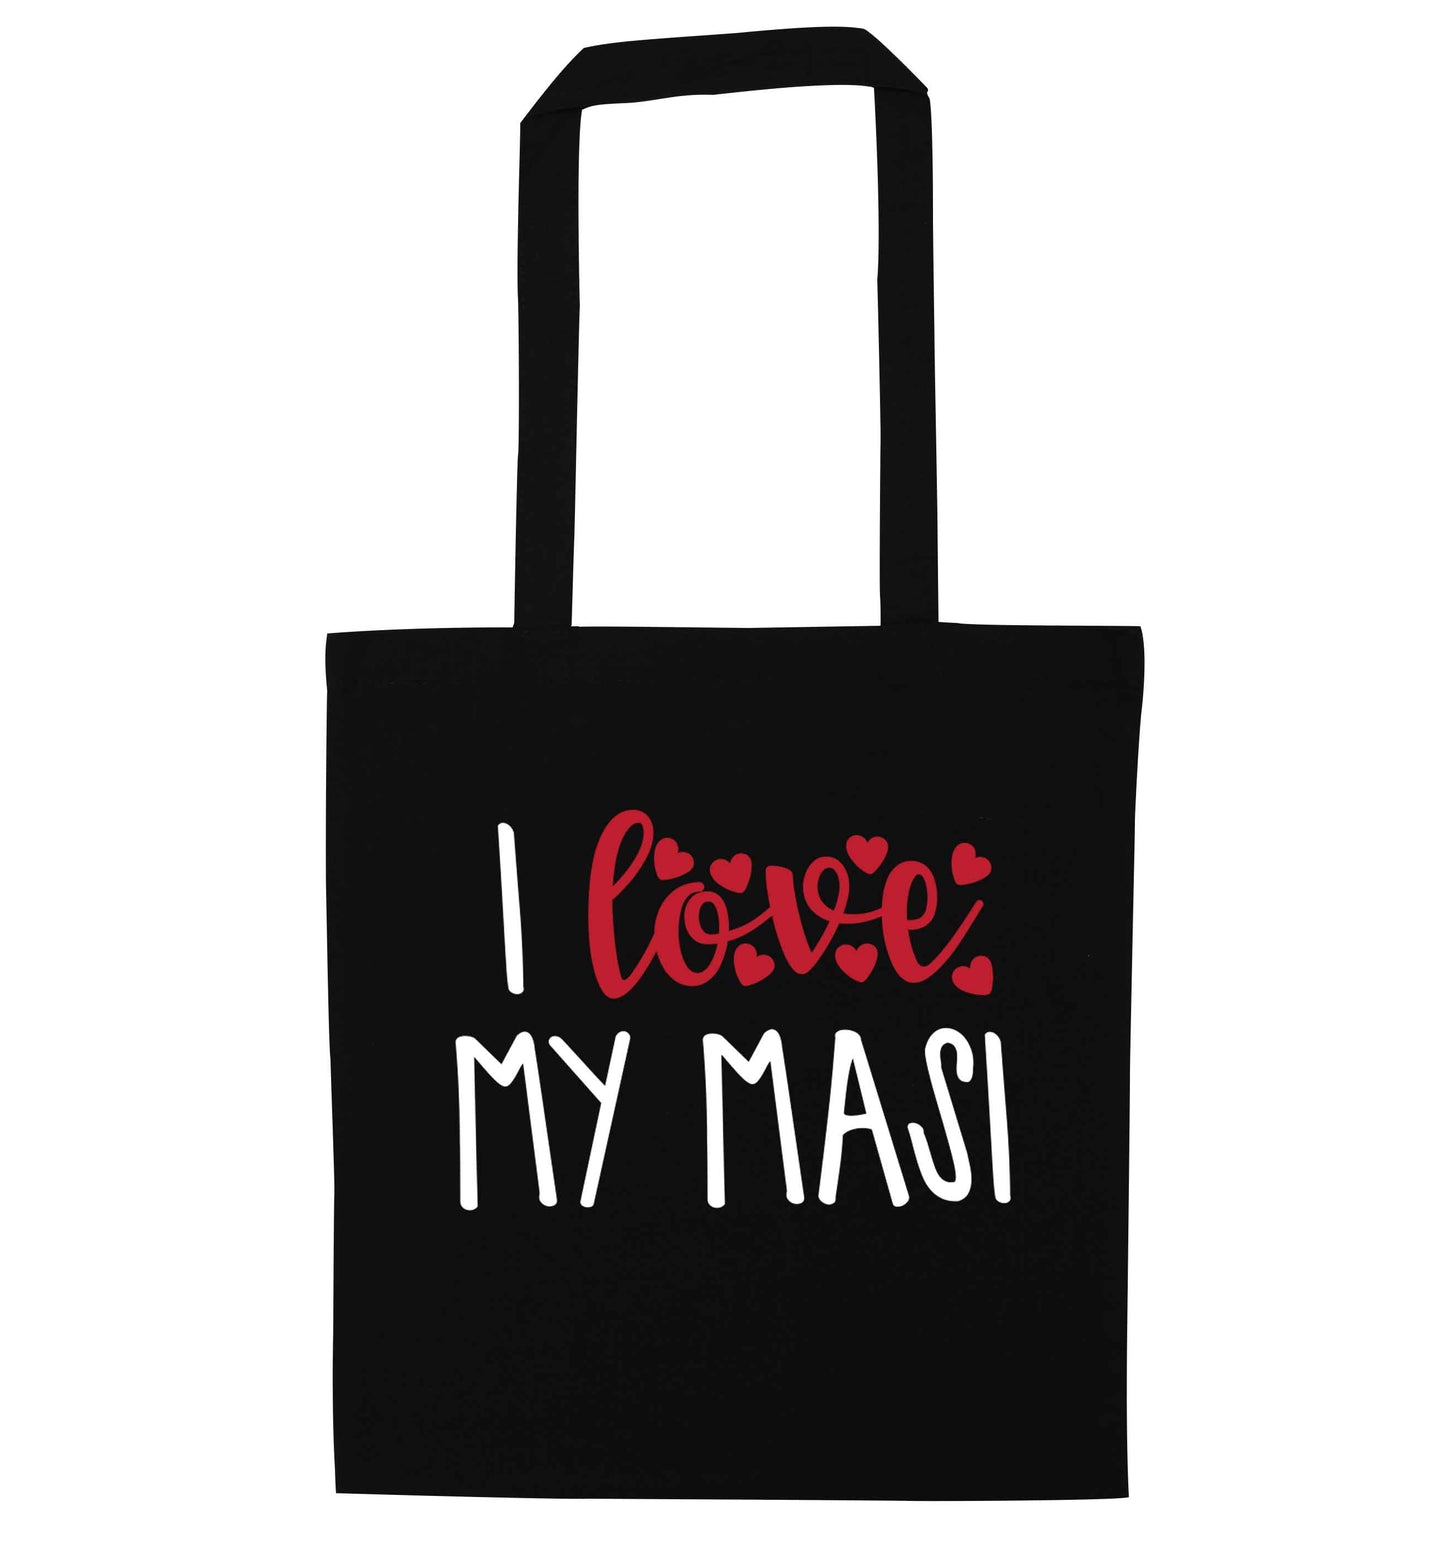 I love my masi black tote bag